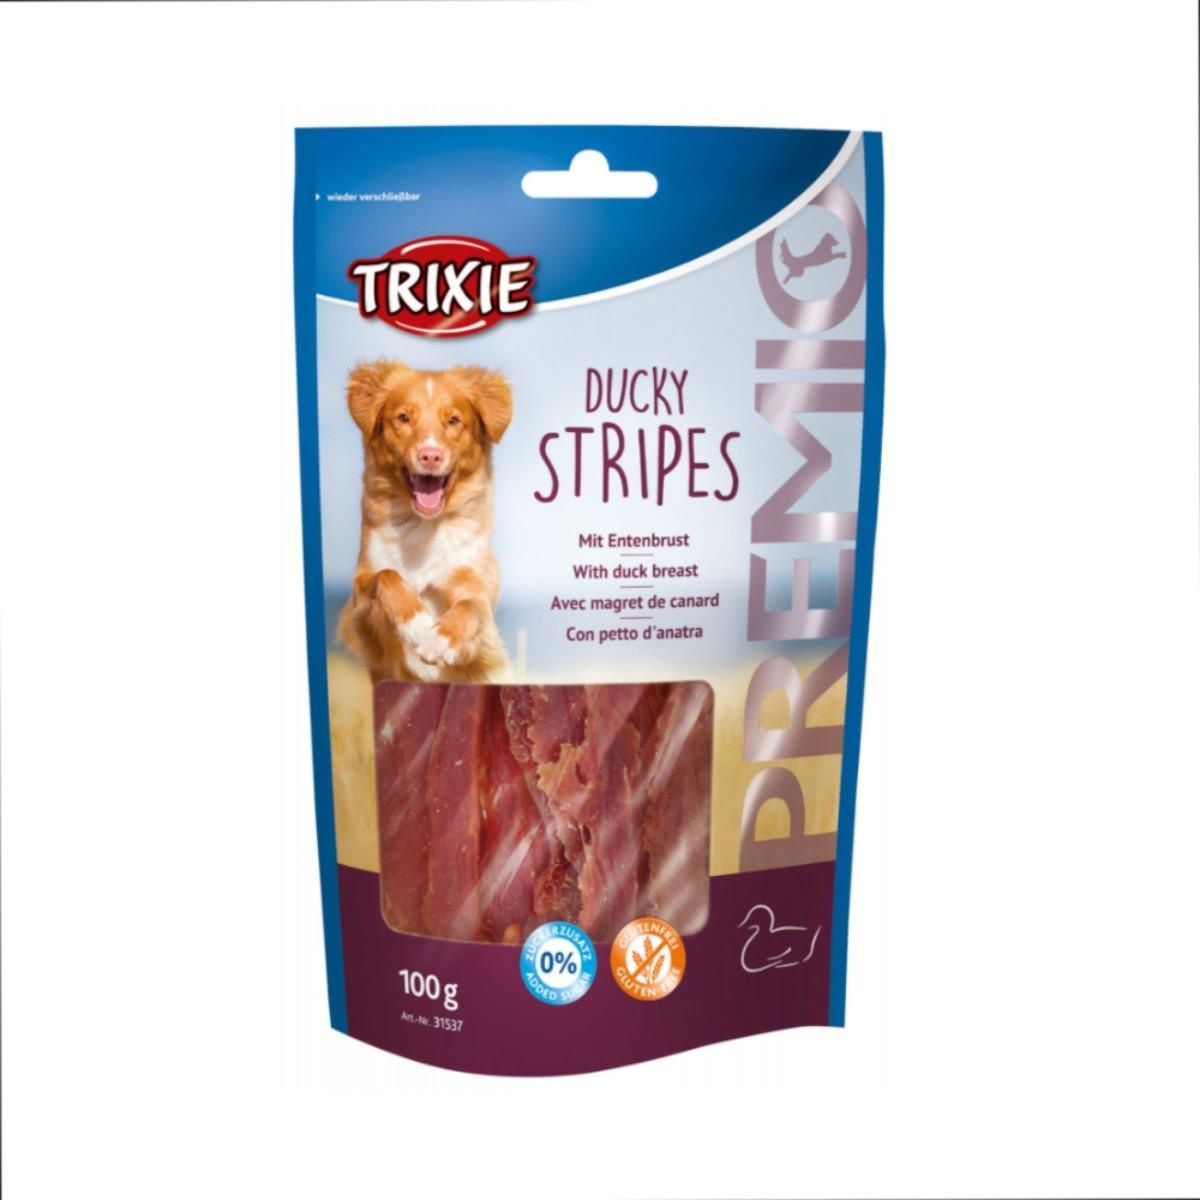 TRIXIE Premio Ducky Stripes Light - przysmak dla psa 100g - 31537